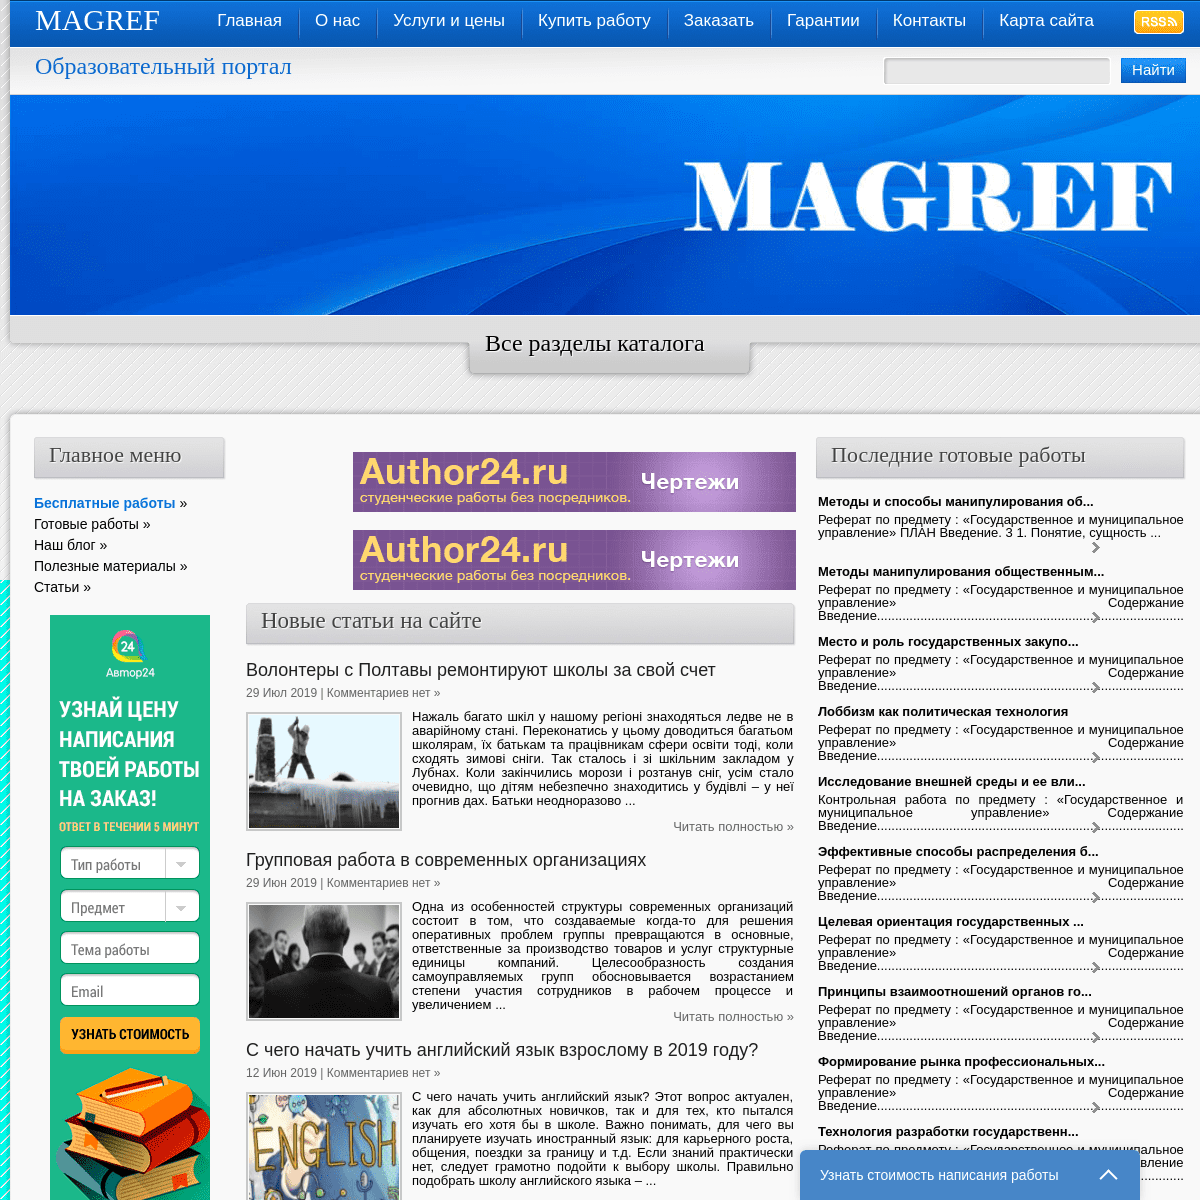 A complete backup of magref.ru